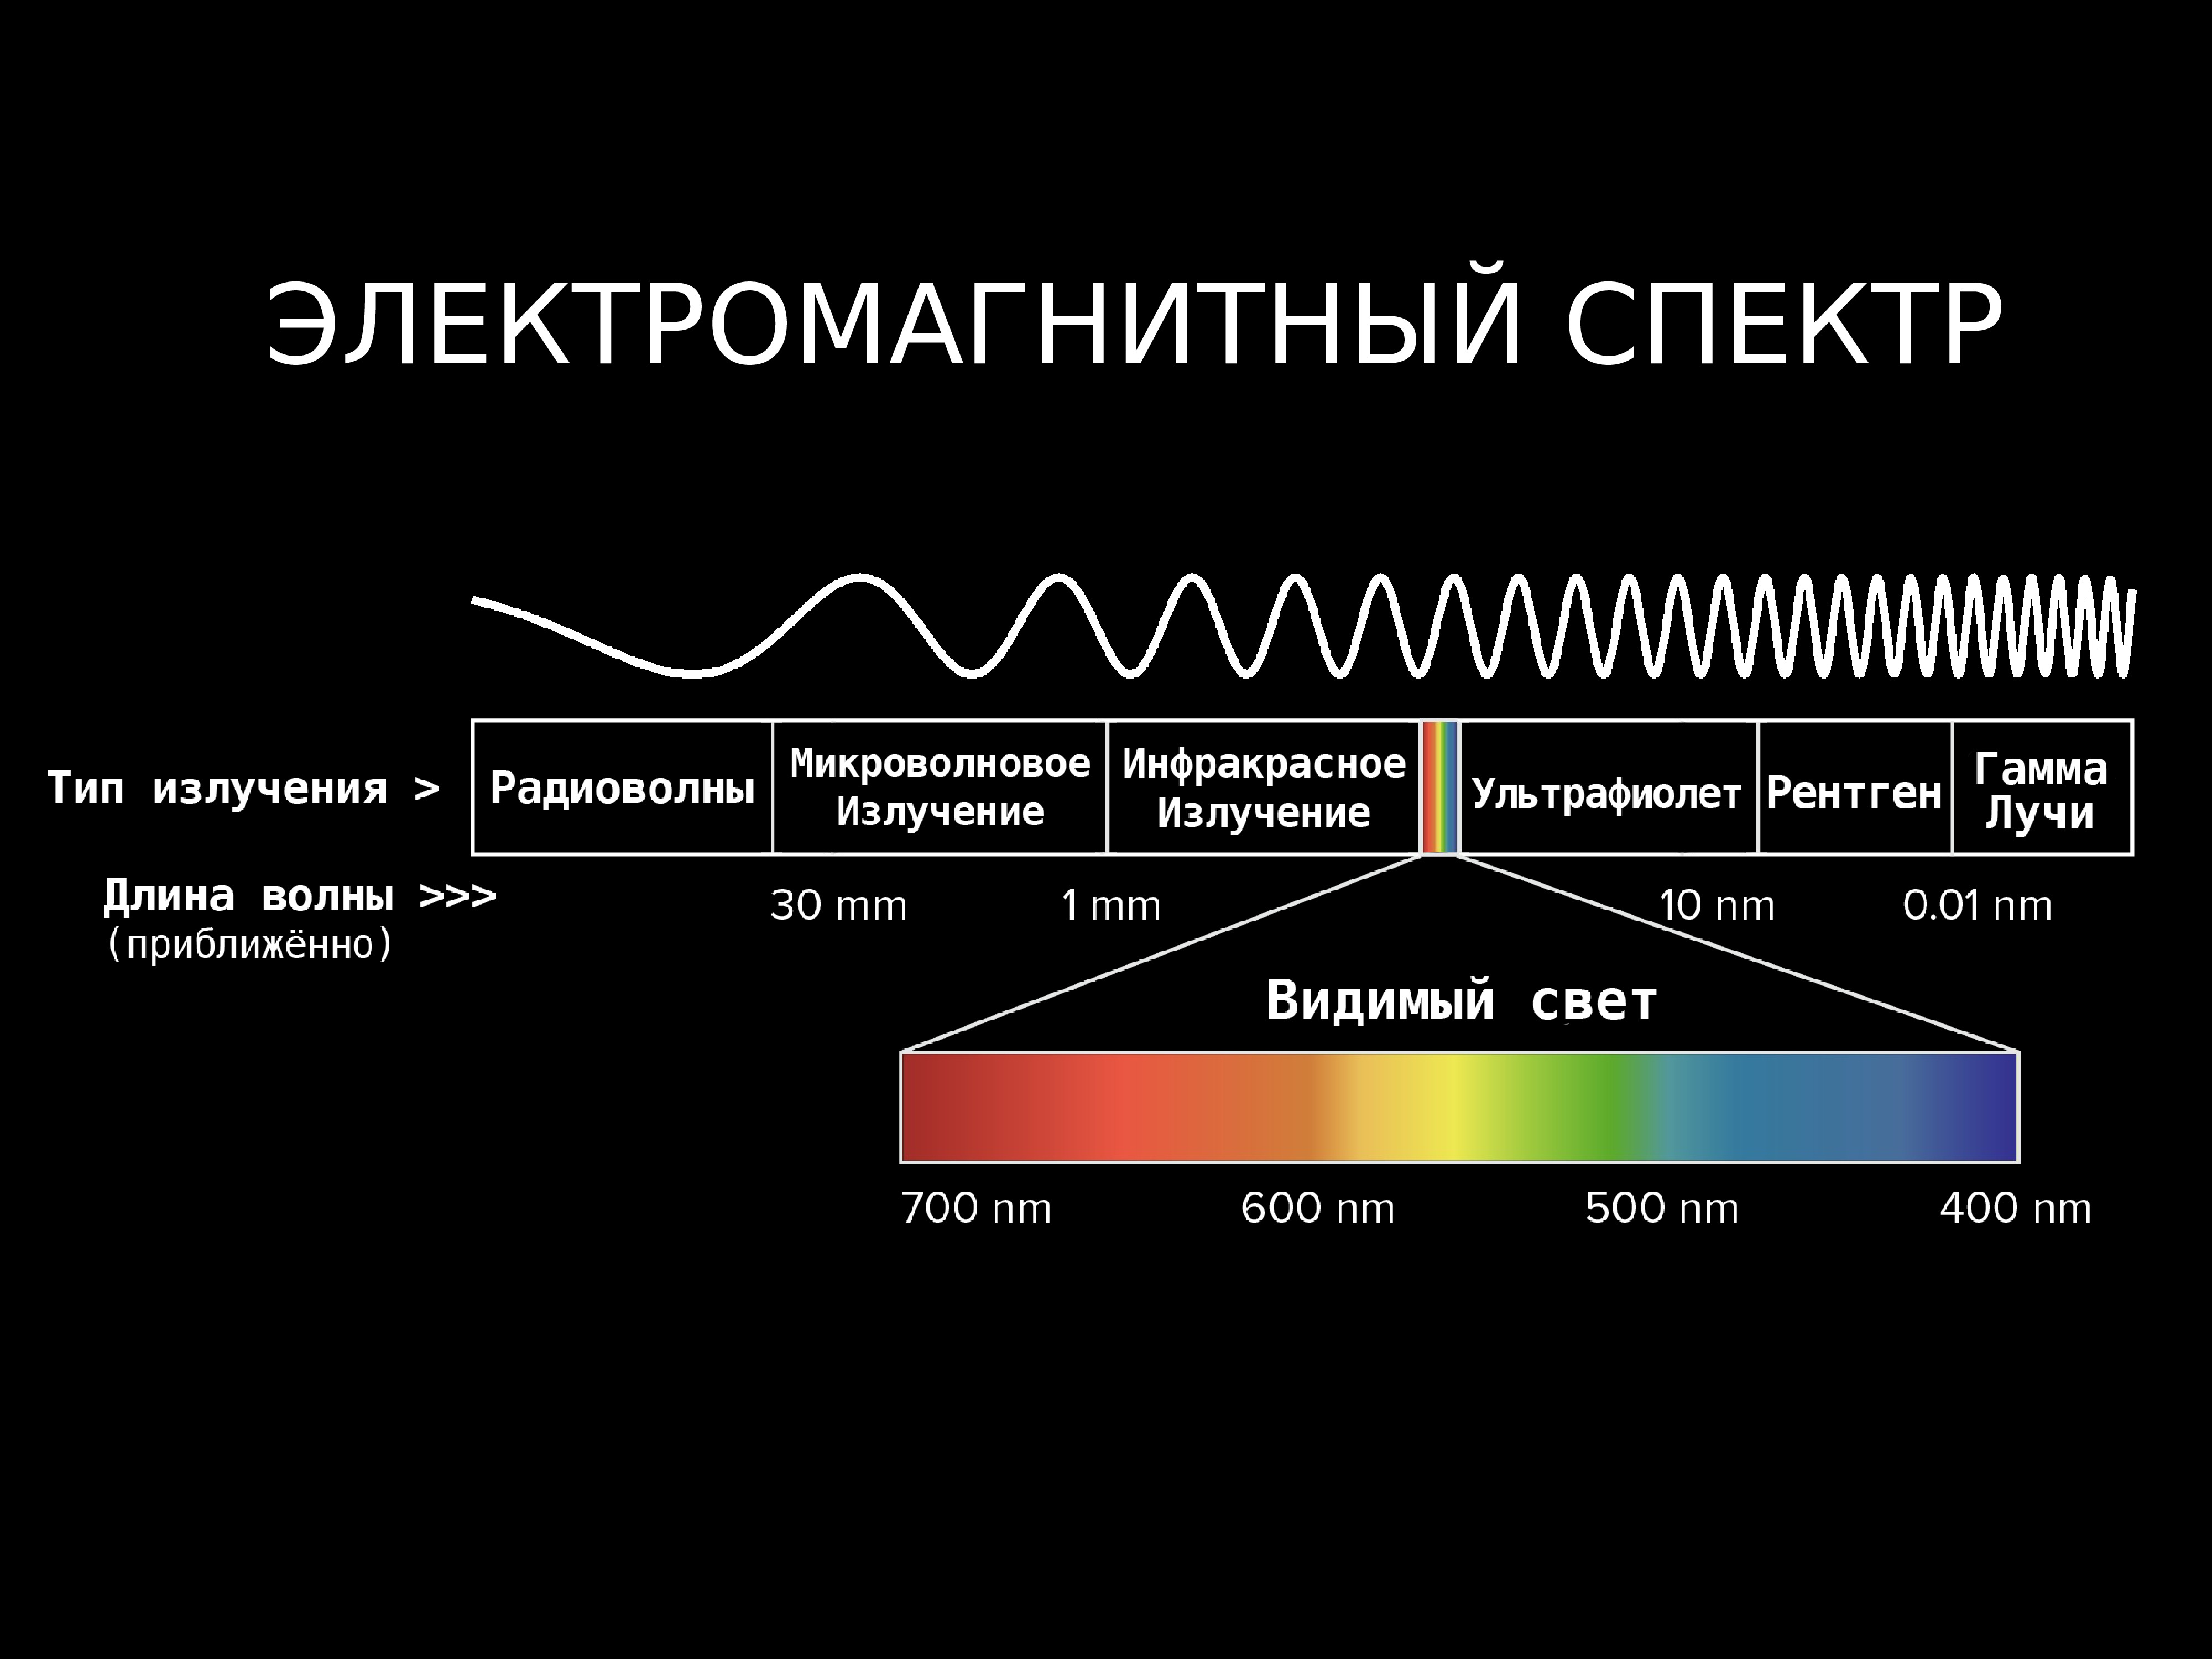 Световая волна имеющая частоту 7.2 10 14. Диапазоны спектра электромагнитного излучения. Электромагнитное излучение спектр электромагнитного излучения. Спектр длин волн электромагнитных излучений. Диапазон излучения электромагнитных волн.